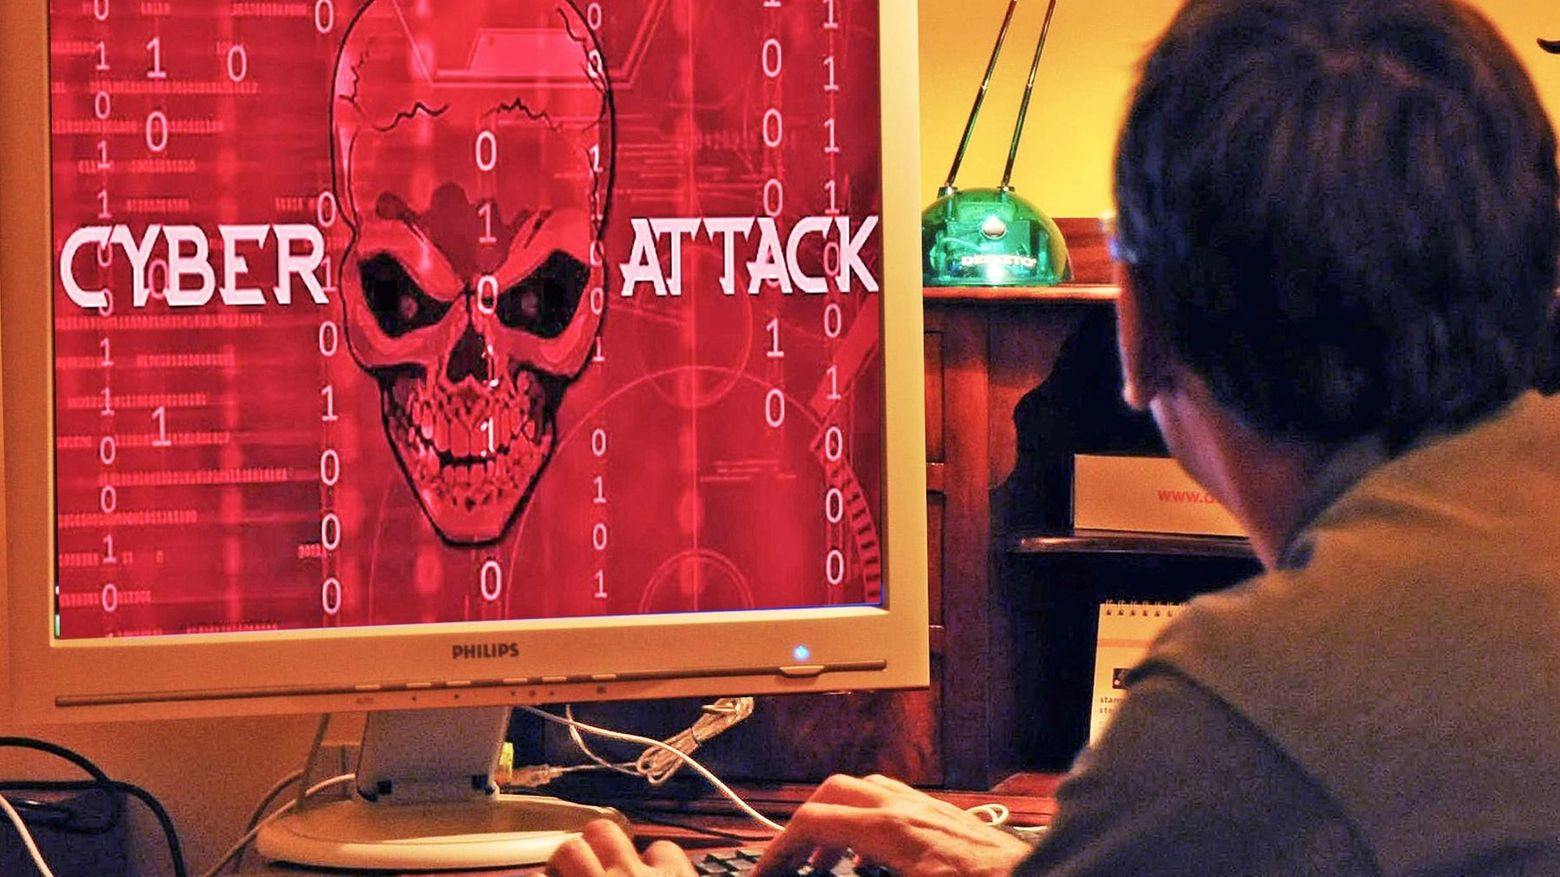 Unife sotto attacco informatico  Hackerati mille profili di studenti  "Aumentati i livelli di sicurezza"